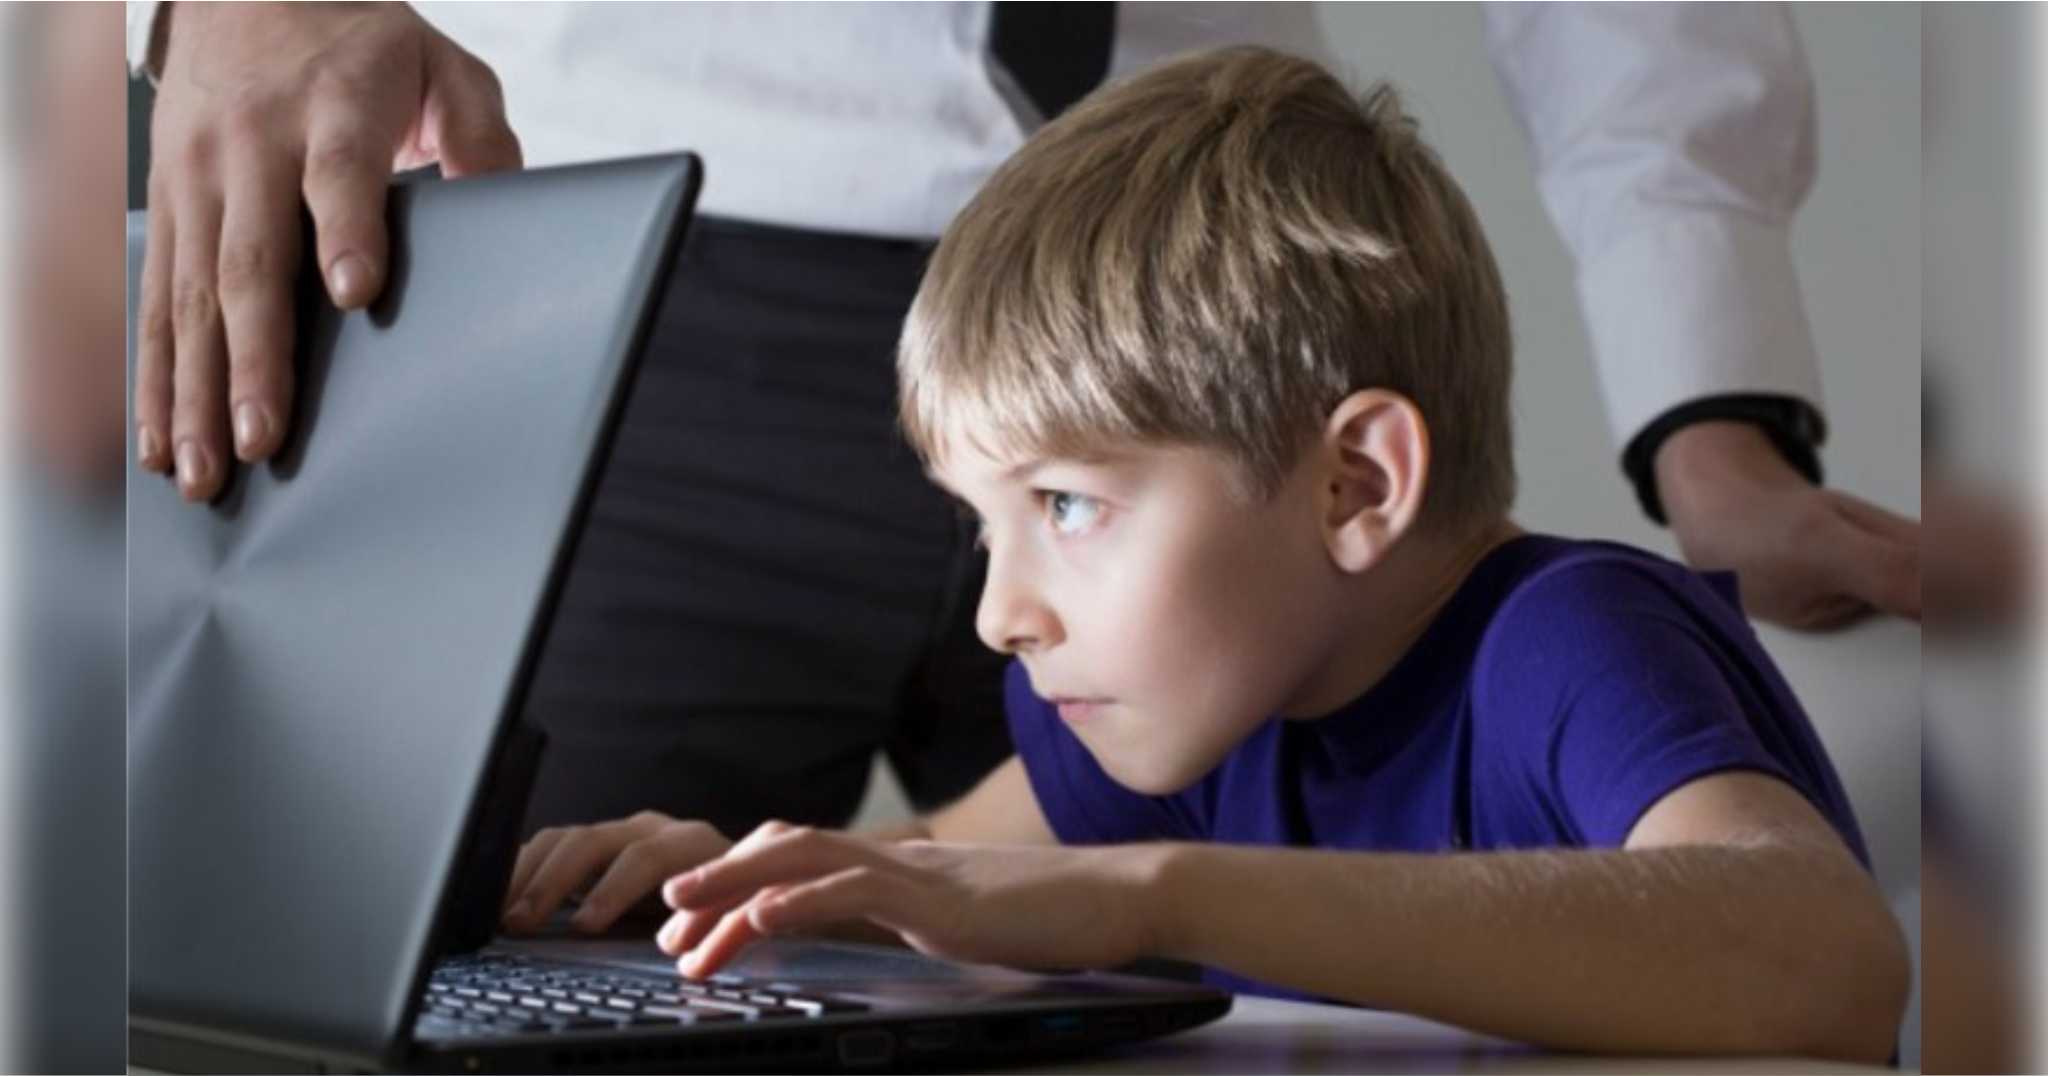 Καλοκαιρινή πλοήγηση στο Διαδίκτυο: Δείτε τι πρέπει να προσέχουν τα παιδιά